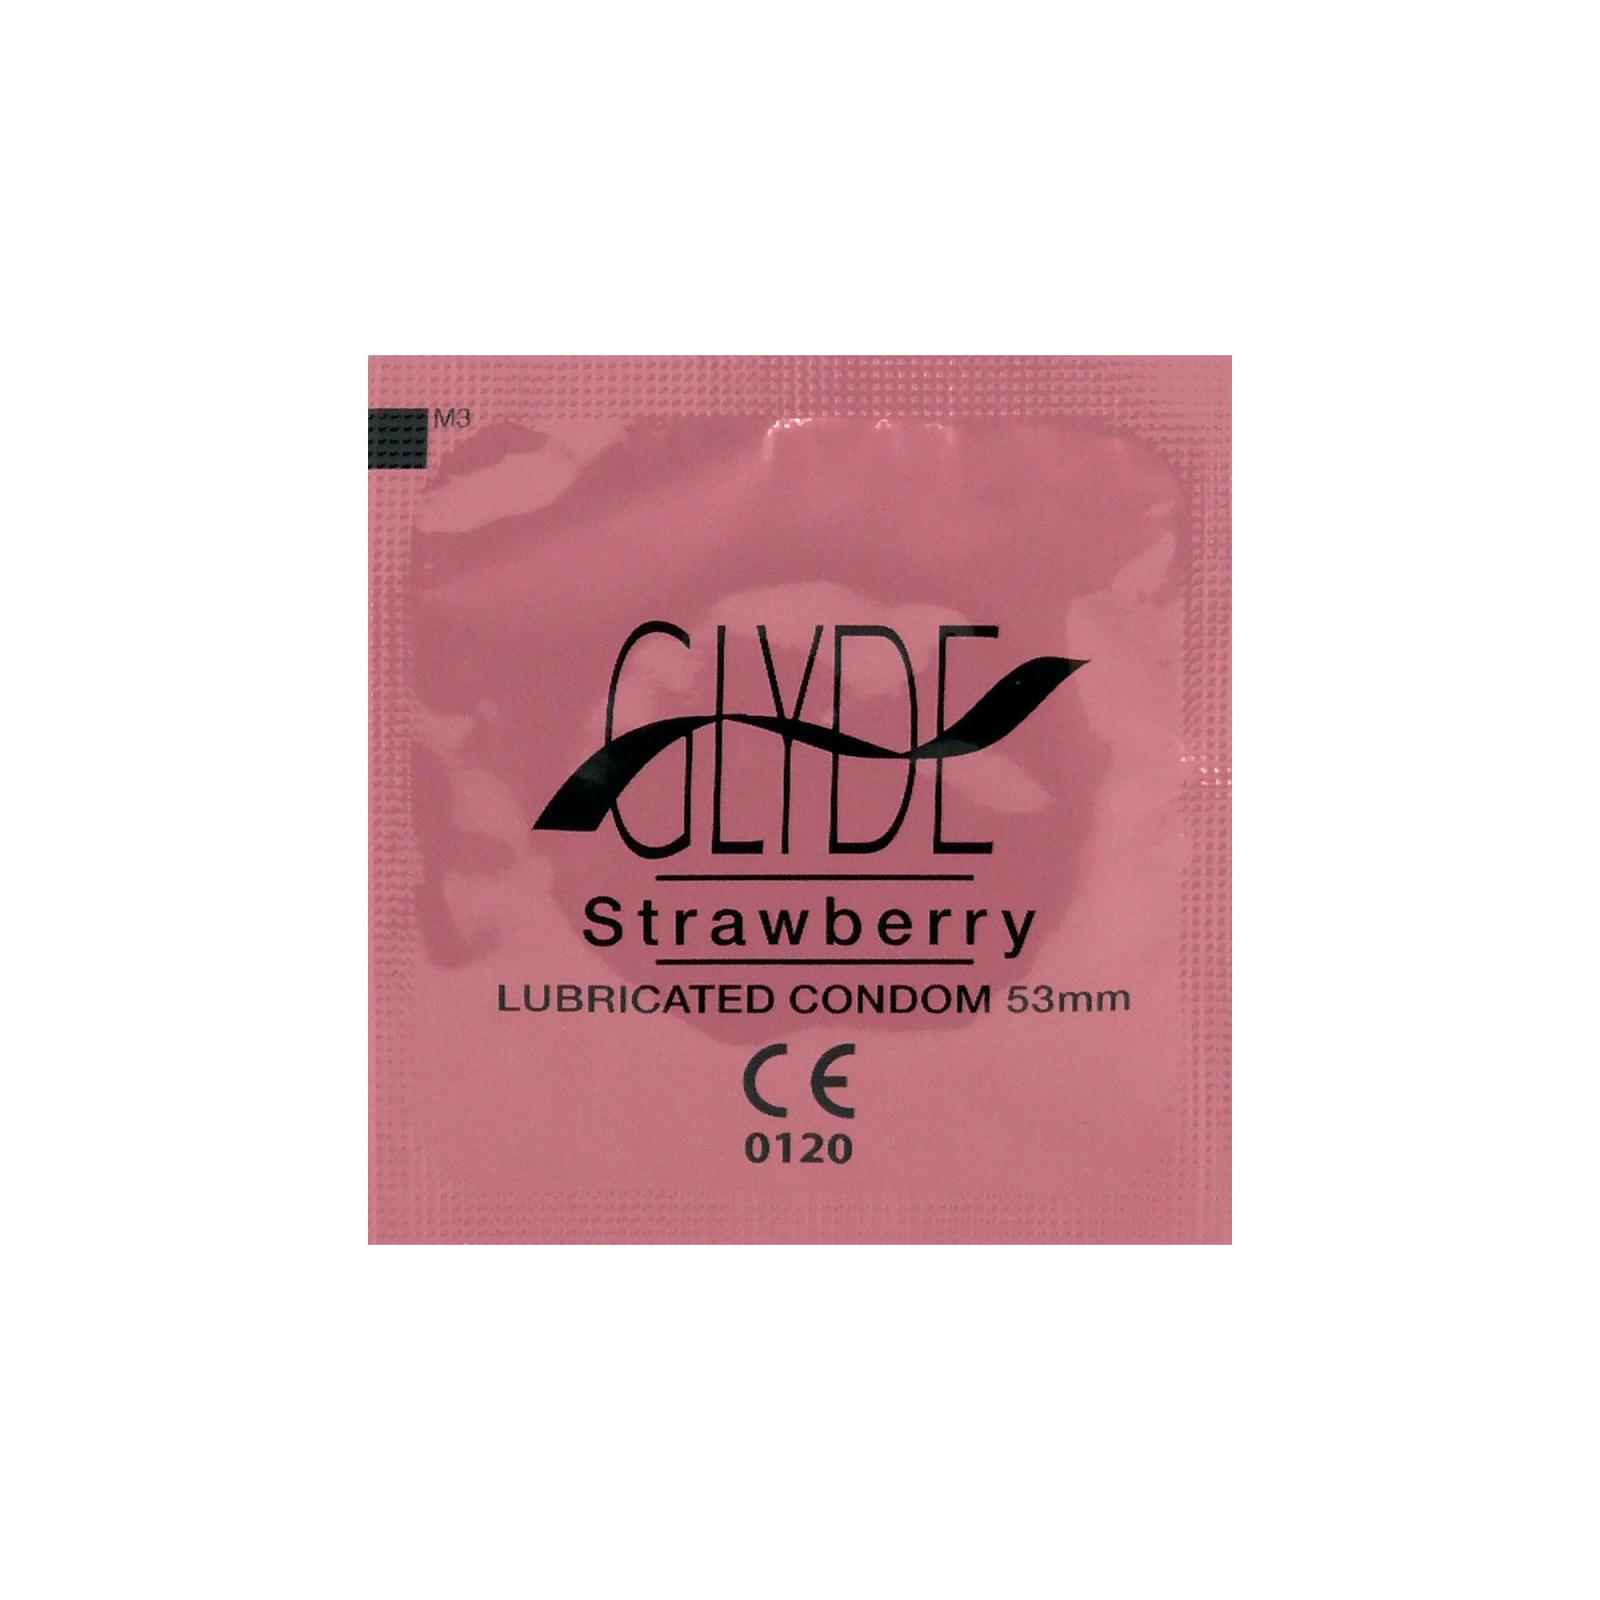 Glyde Kondomy Strawberry 10 ks